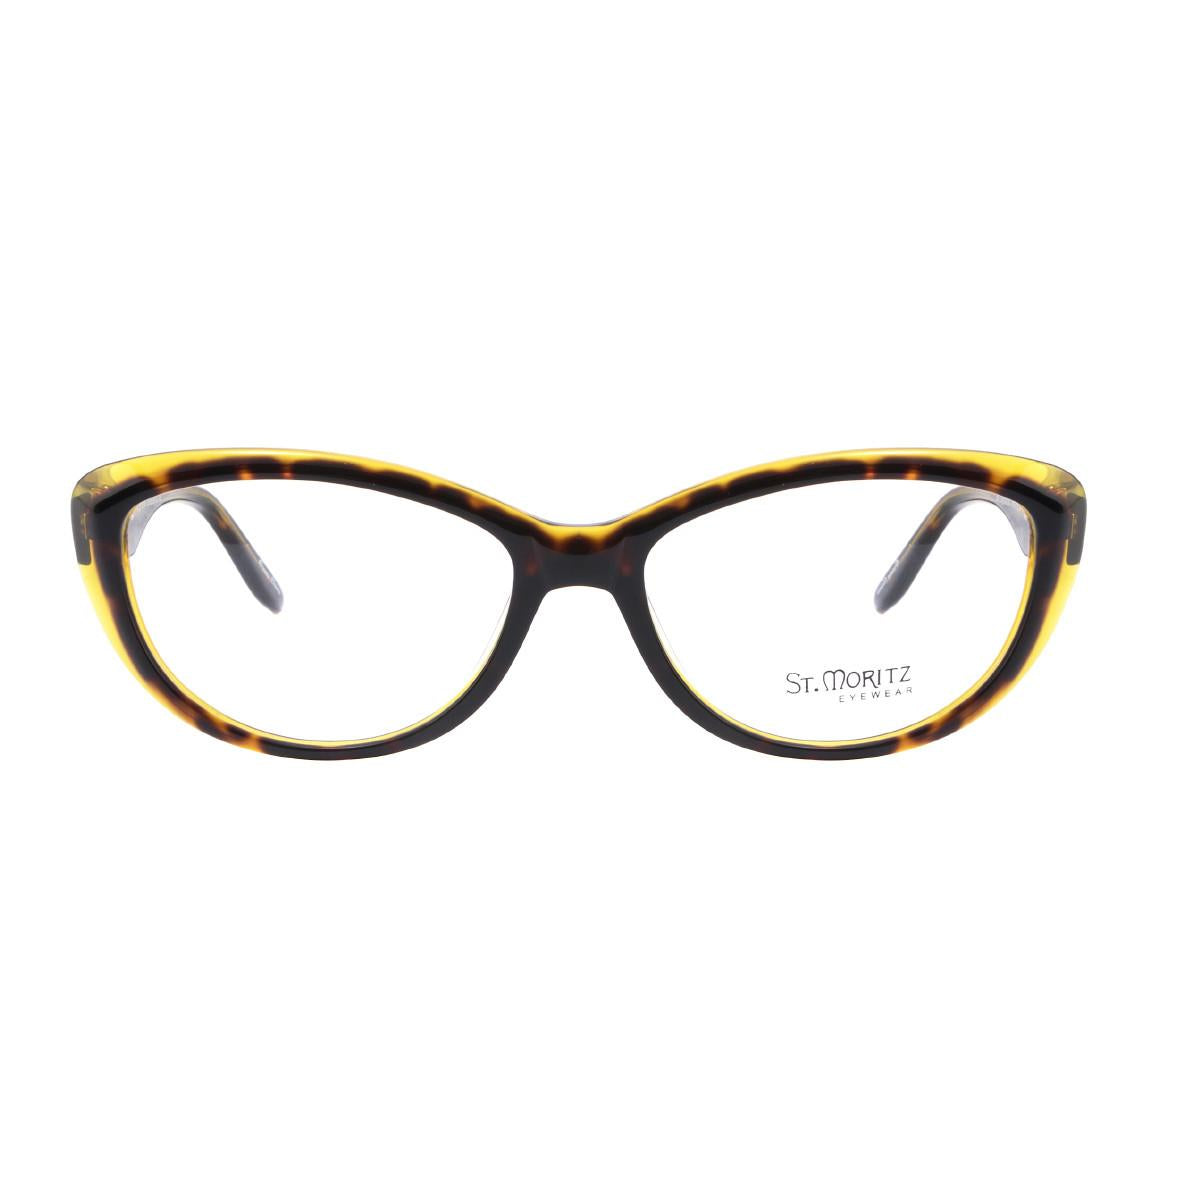  ST MORITZ 170 Eyeglasses 